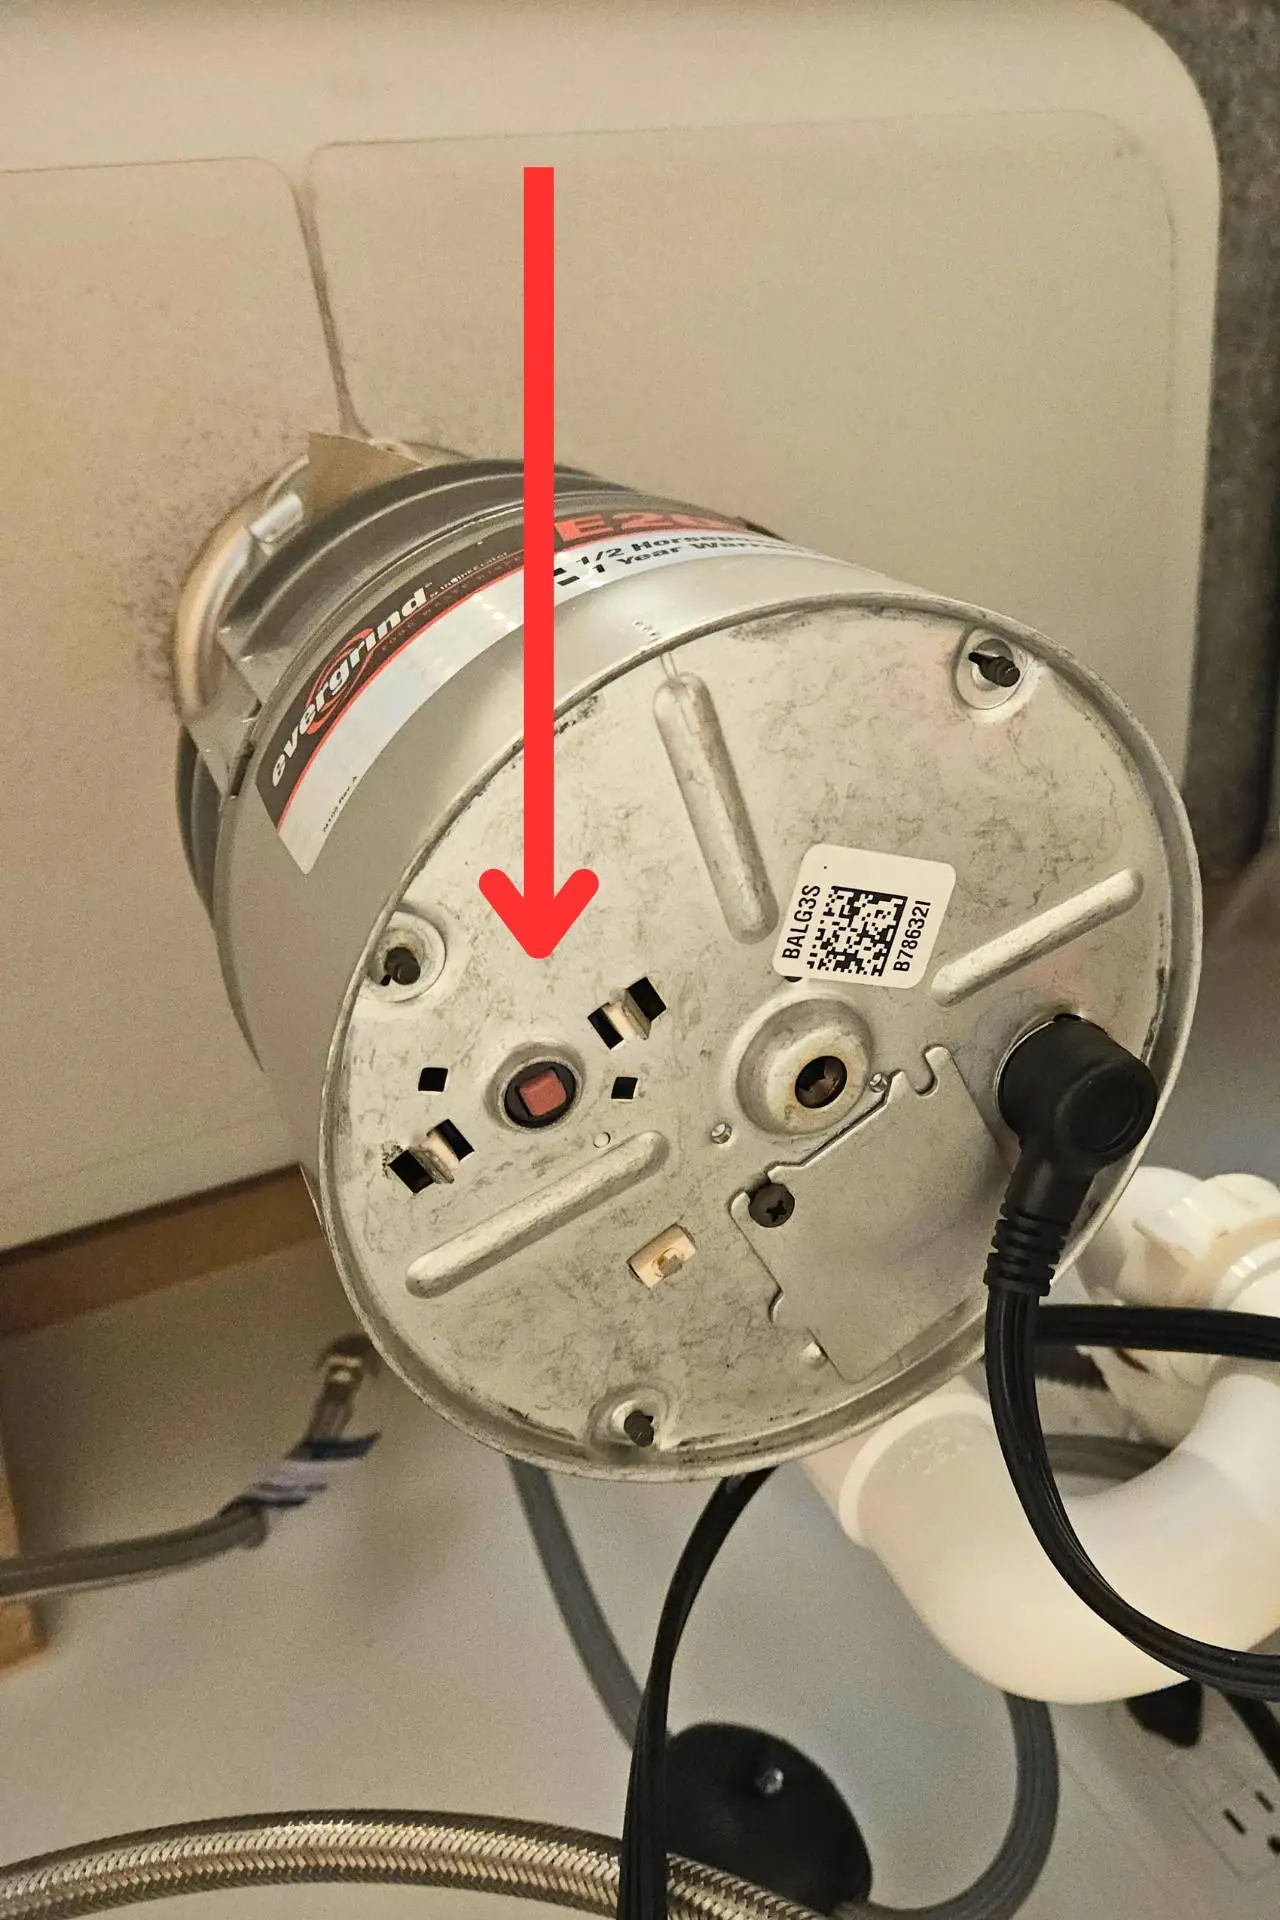 Garbage disposal reset button